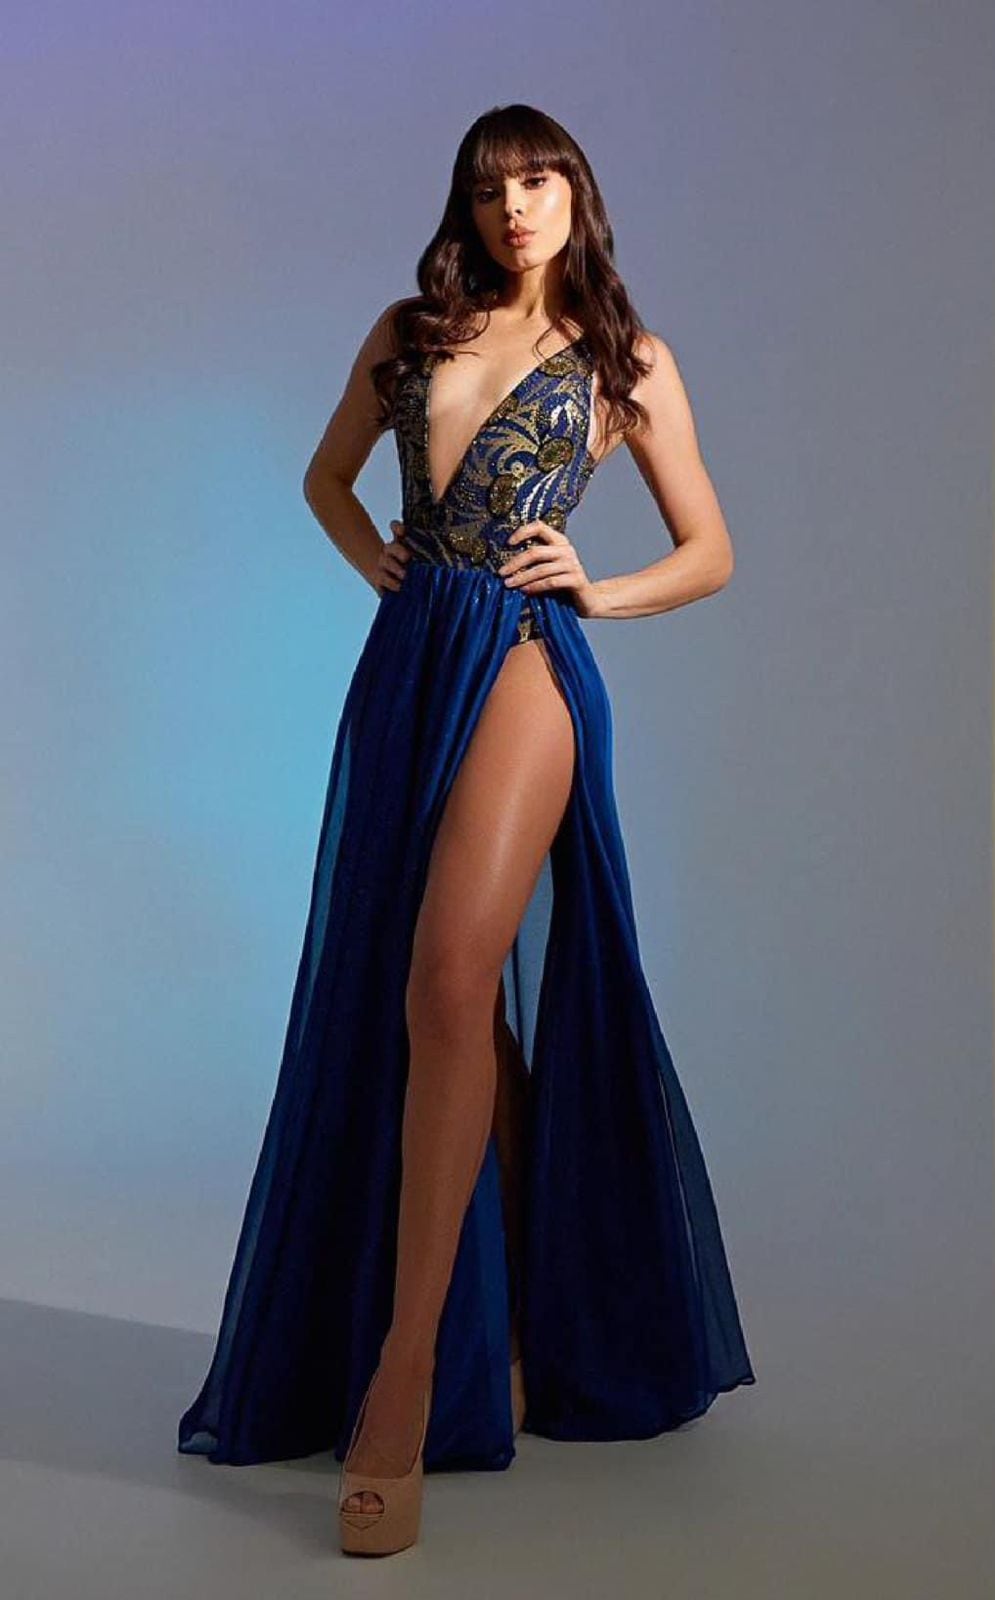 Elena Hidalgo es modelo profesional y tiene 32 años. Ella tiene una estatura de 1,77 metros. 